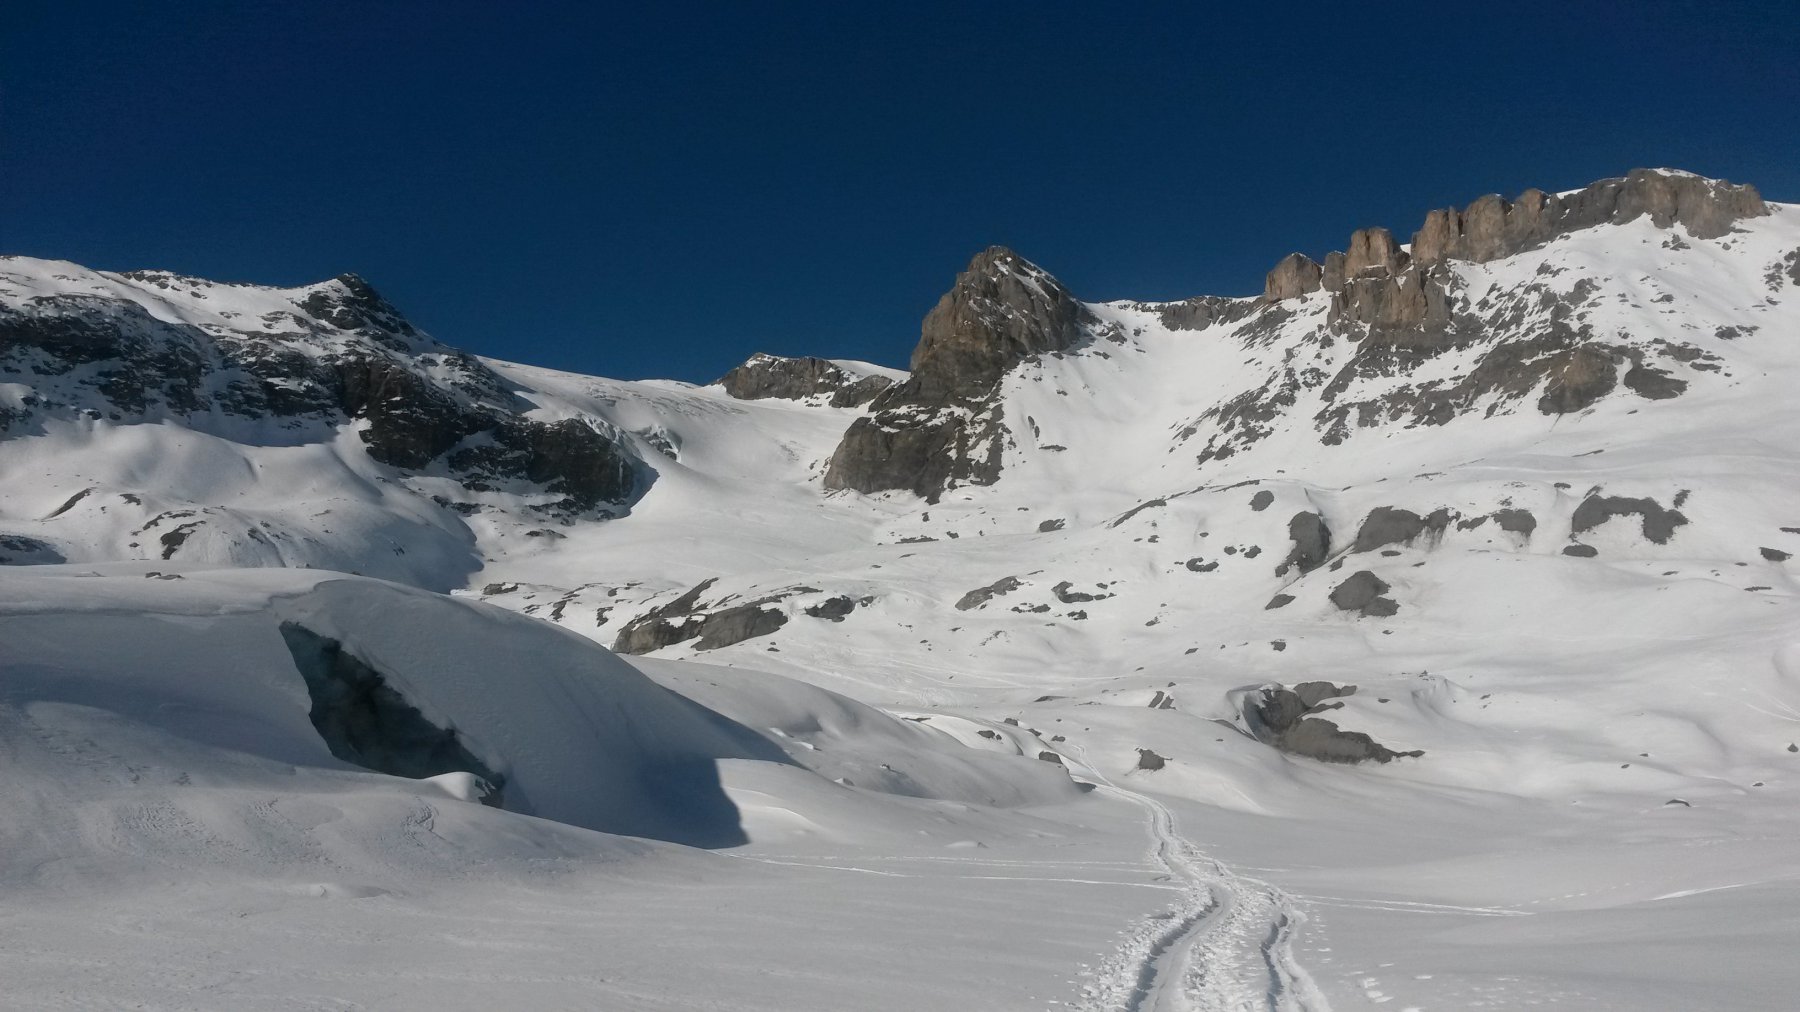 Finalmente la vista si apre: in lontananza si intravede la cupole nevosa della cima (a sinistra delle rocce sotto il Grosstrubel